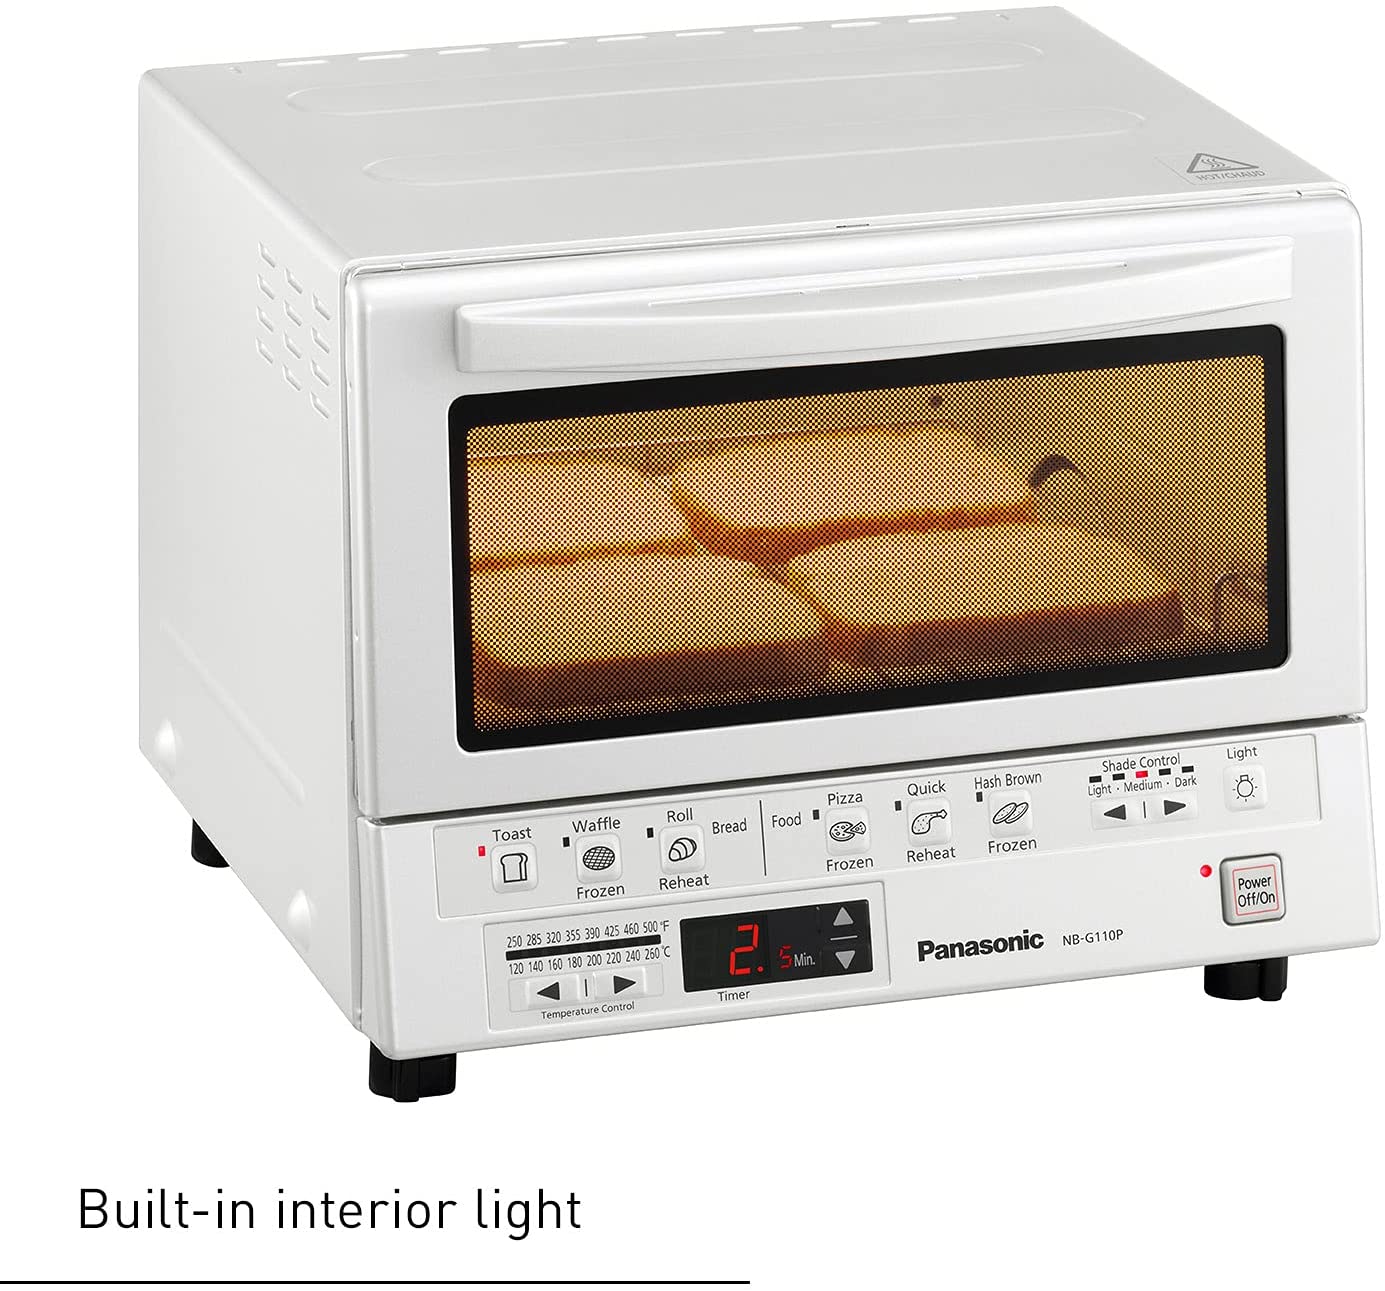 Panasonic NB-G110P-K FlashXpress Toaster Oven - White